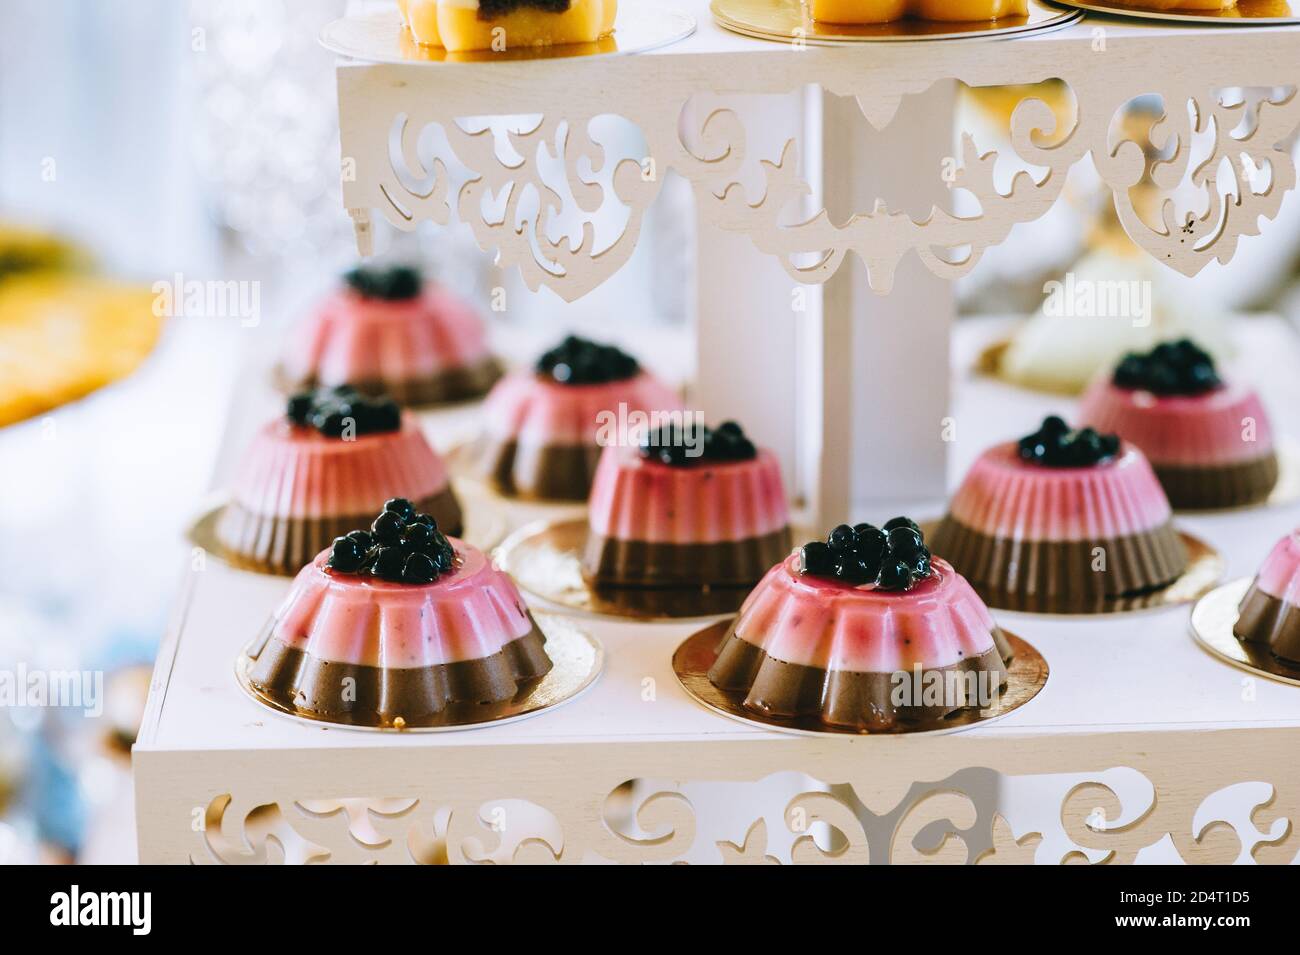 Hochzeitstorte mit bunten Cupcakes, Makronen, Kuchen, Gelee und Obst. Stockfoto